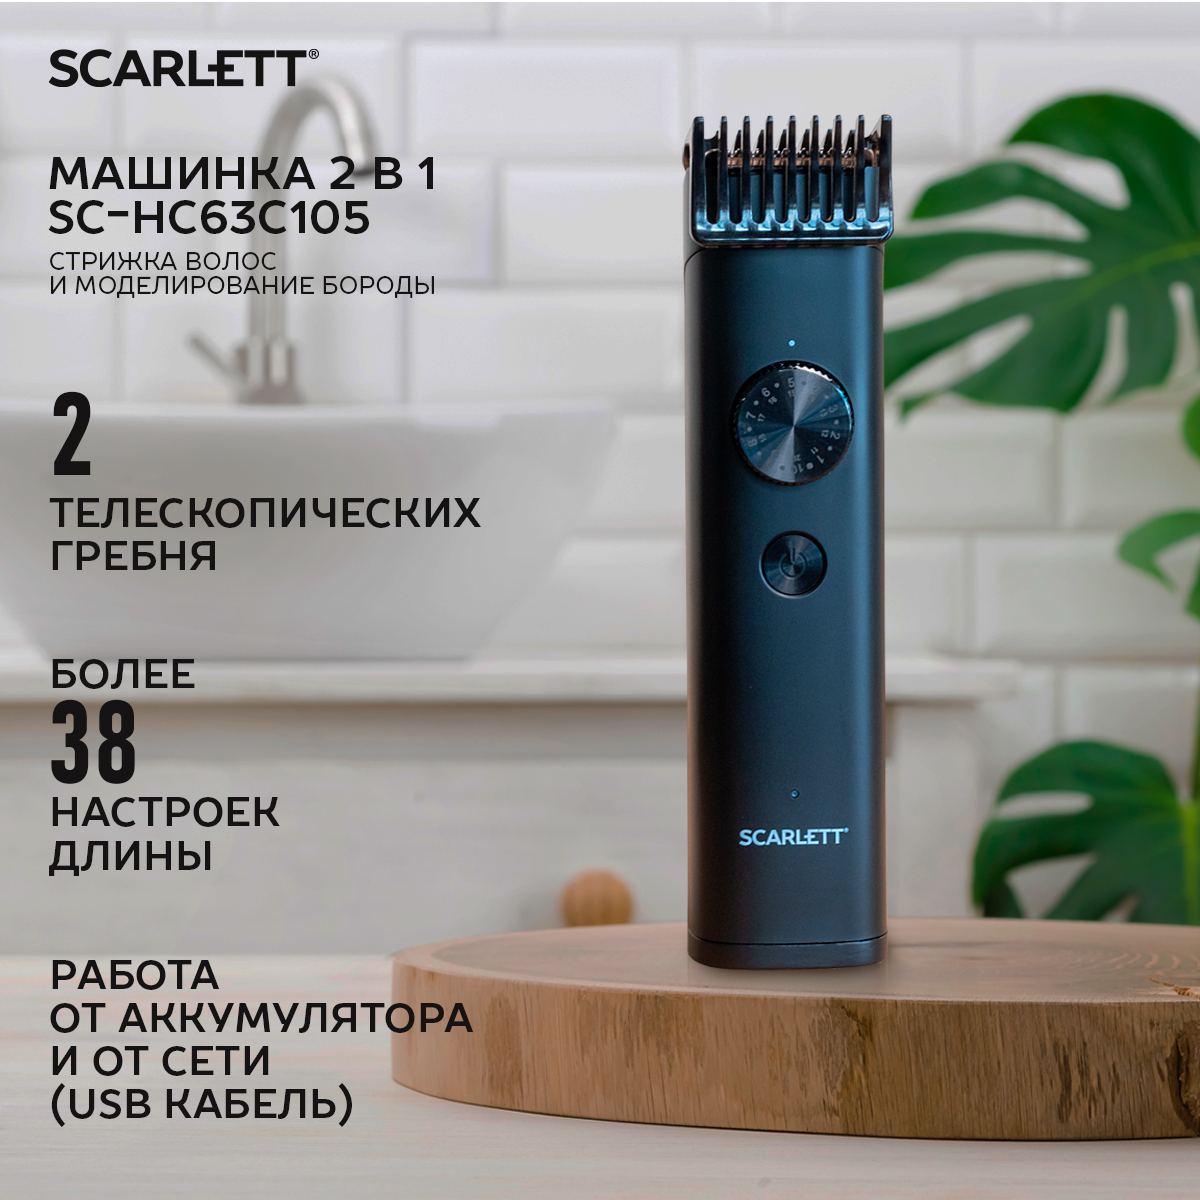 Машинка для стрижки волос Scarlett SC-HC63C105 черный машинка для стрижки волос scarlett sc hc63050